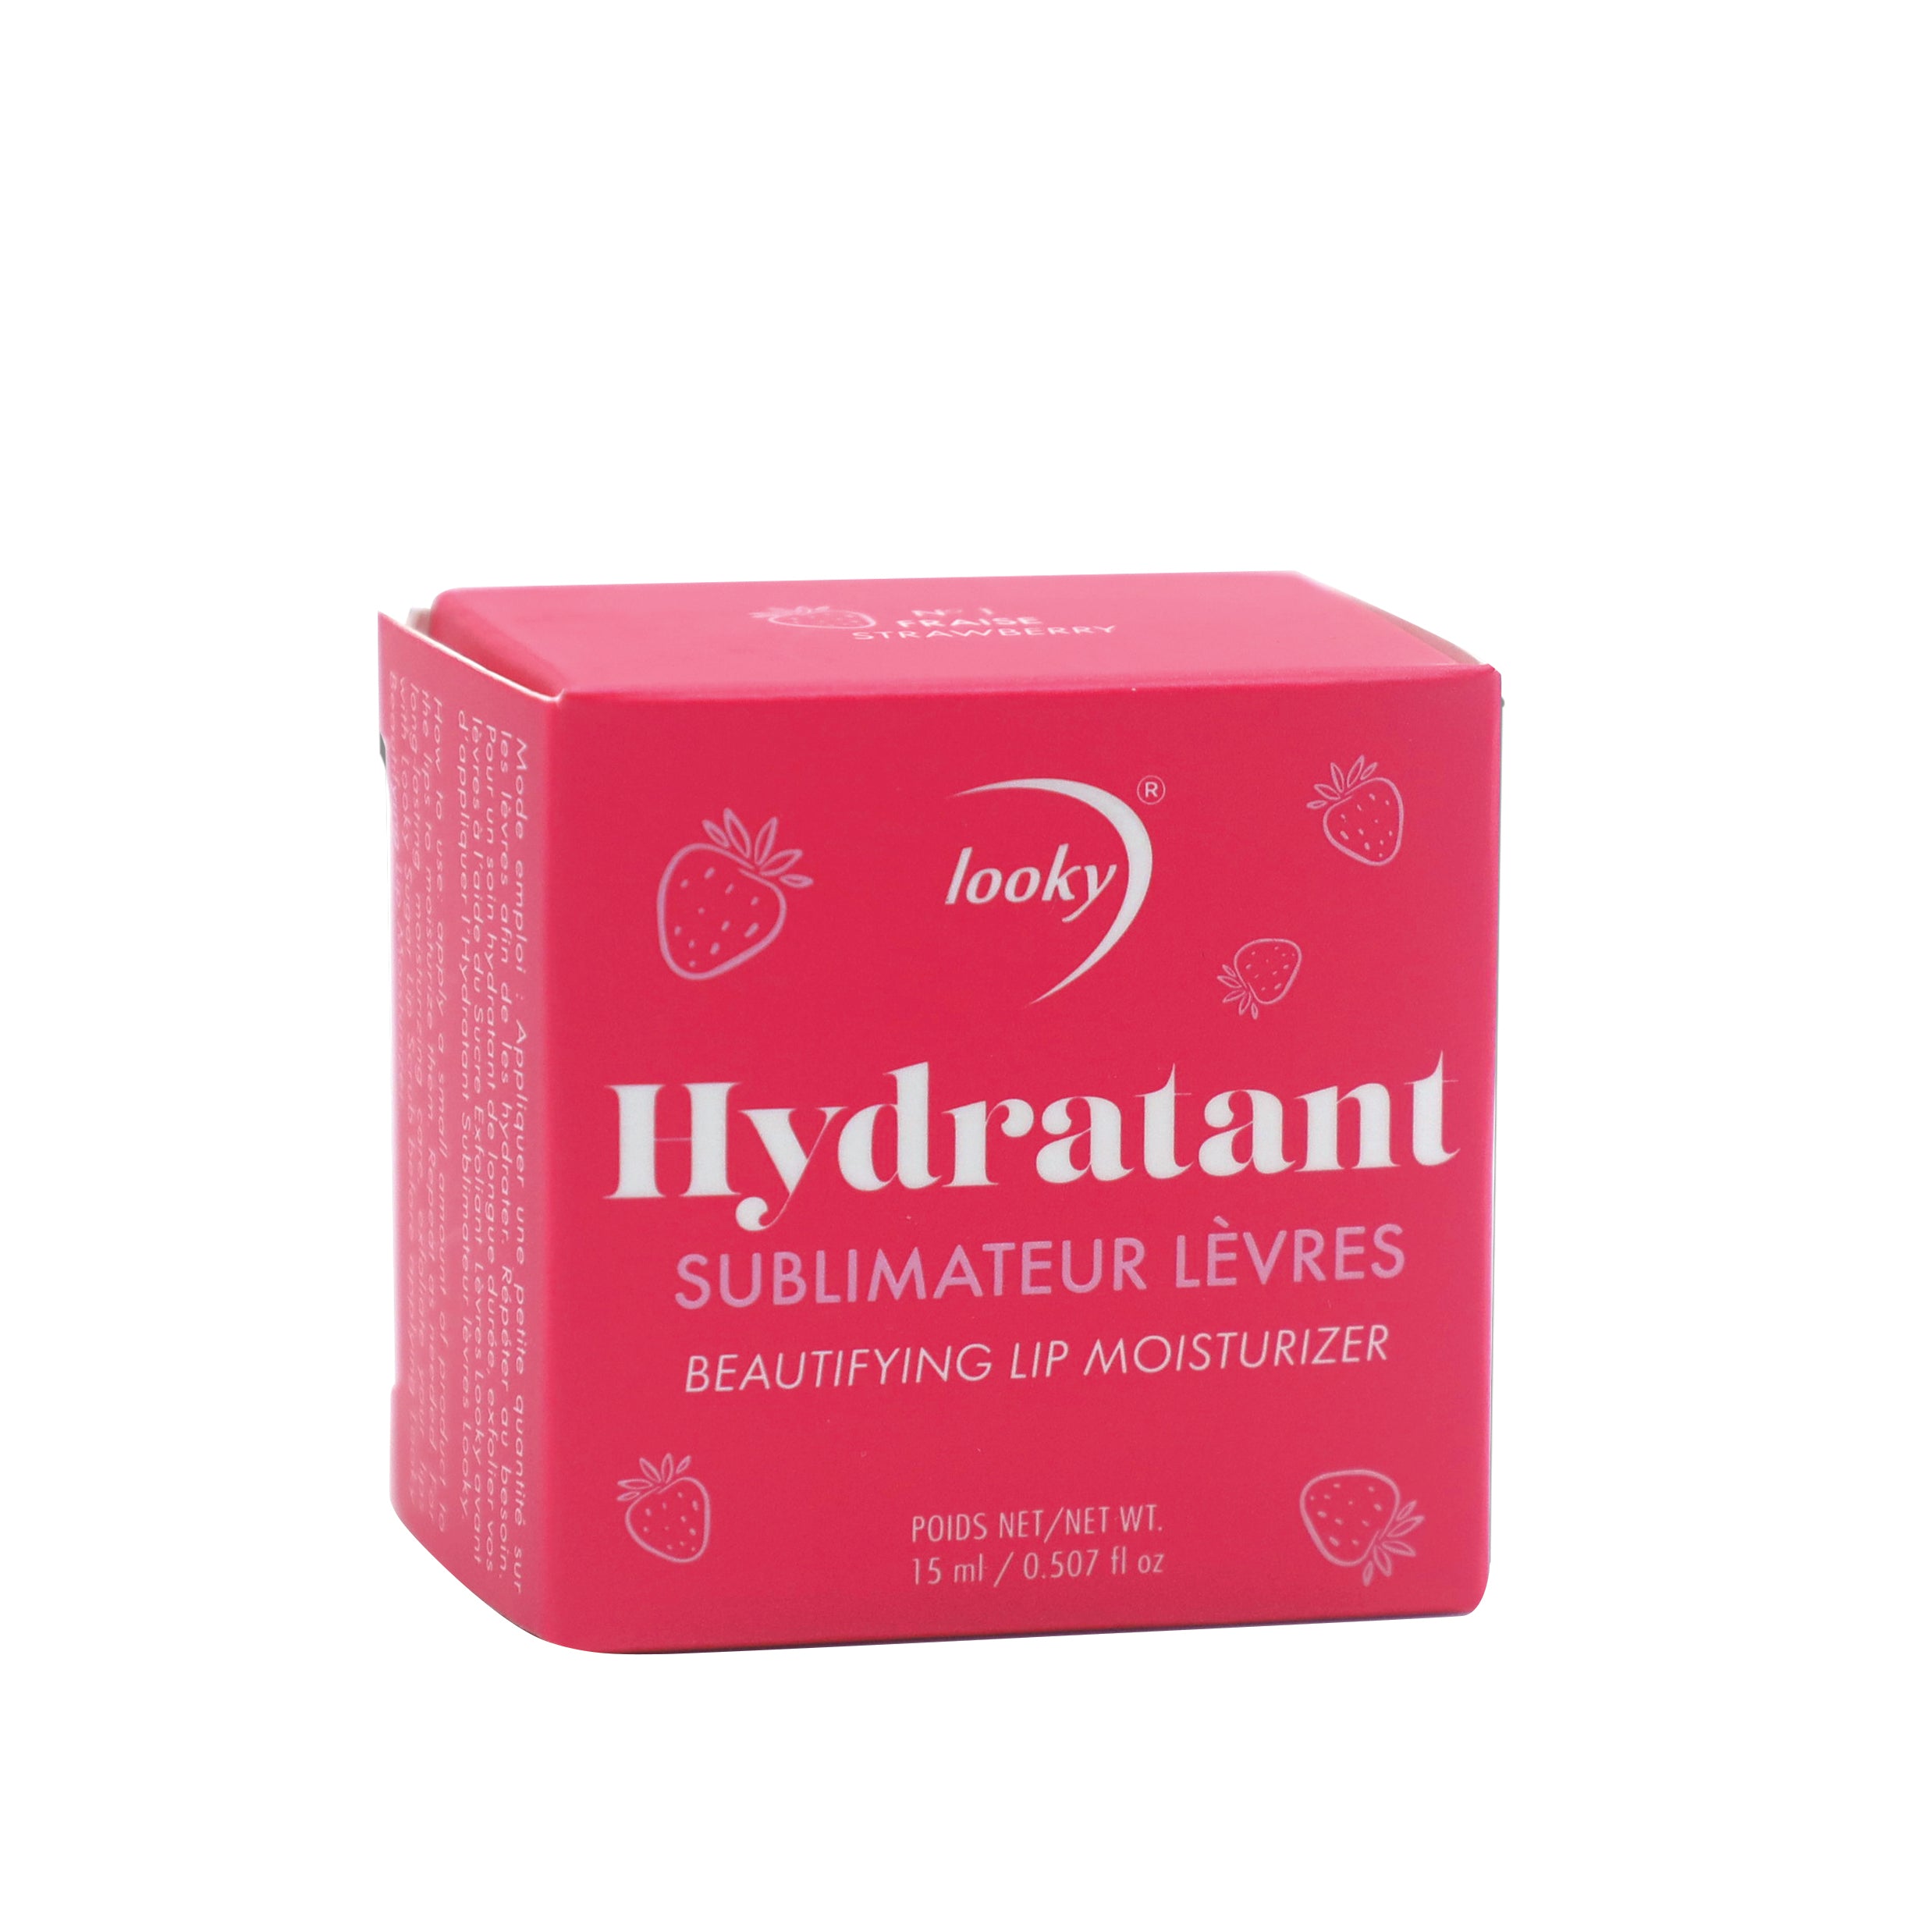 Looky Hydratant Sublimateur Lèvres #1 - Fraise